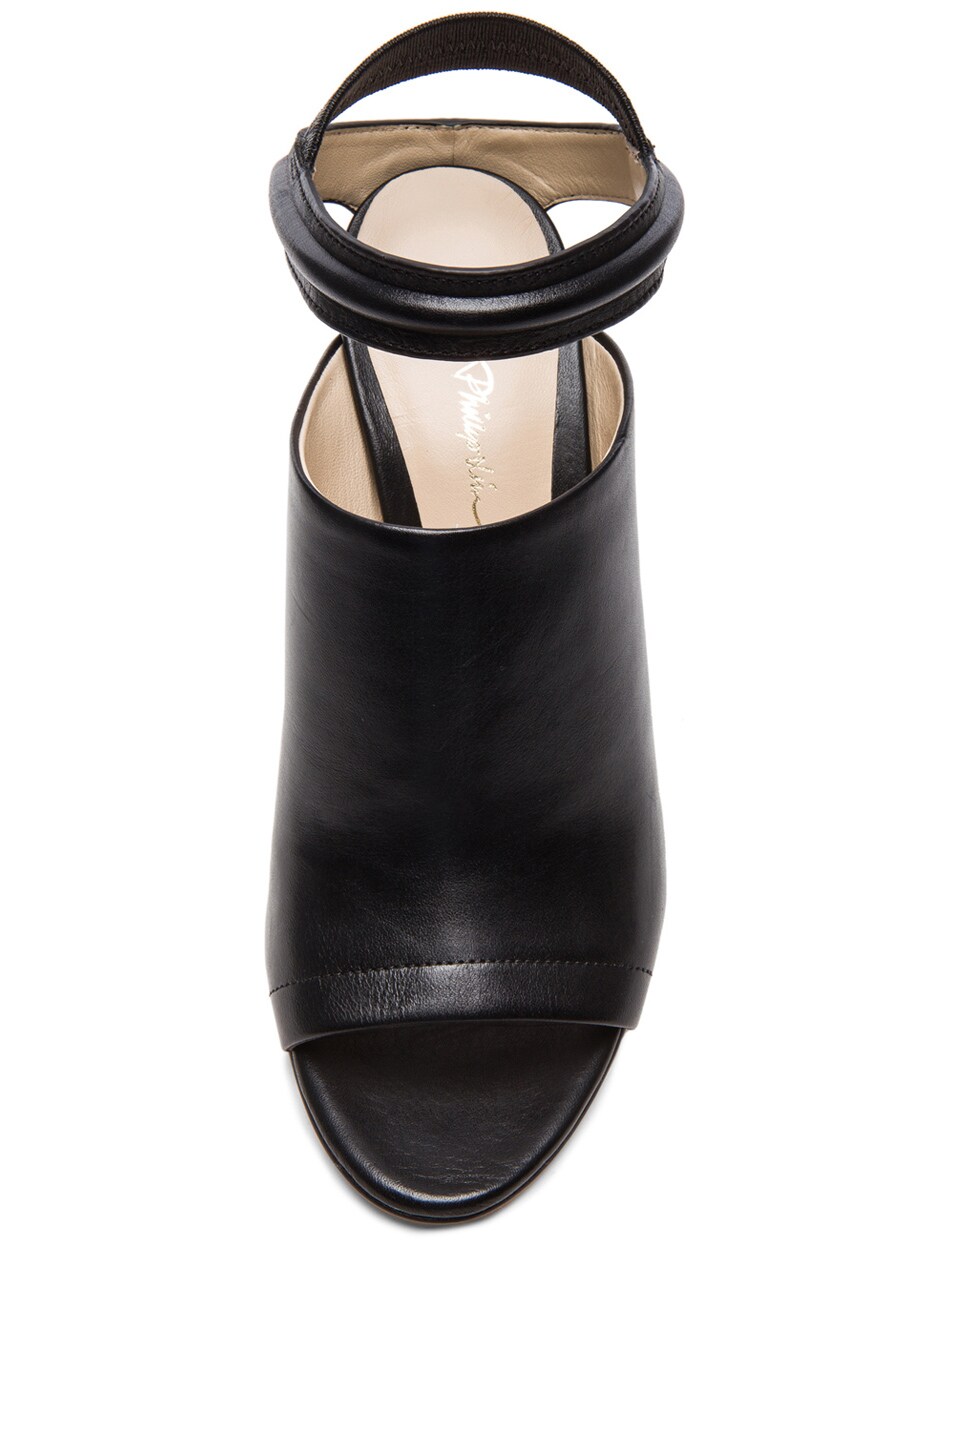 3.1 phillip lim Martini High Heel Leather Sandals in Black | FWRD